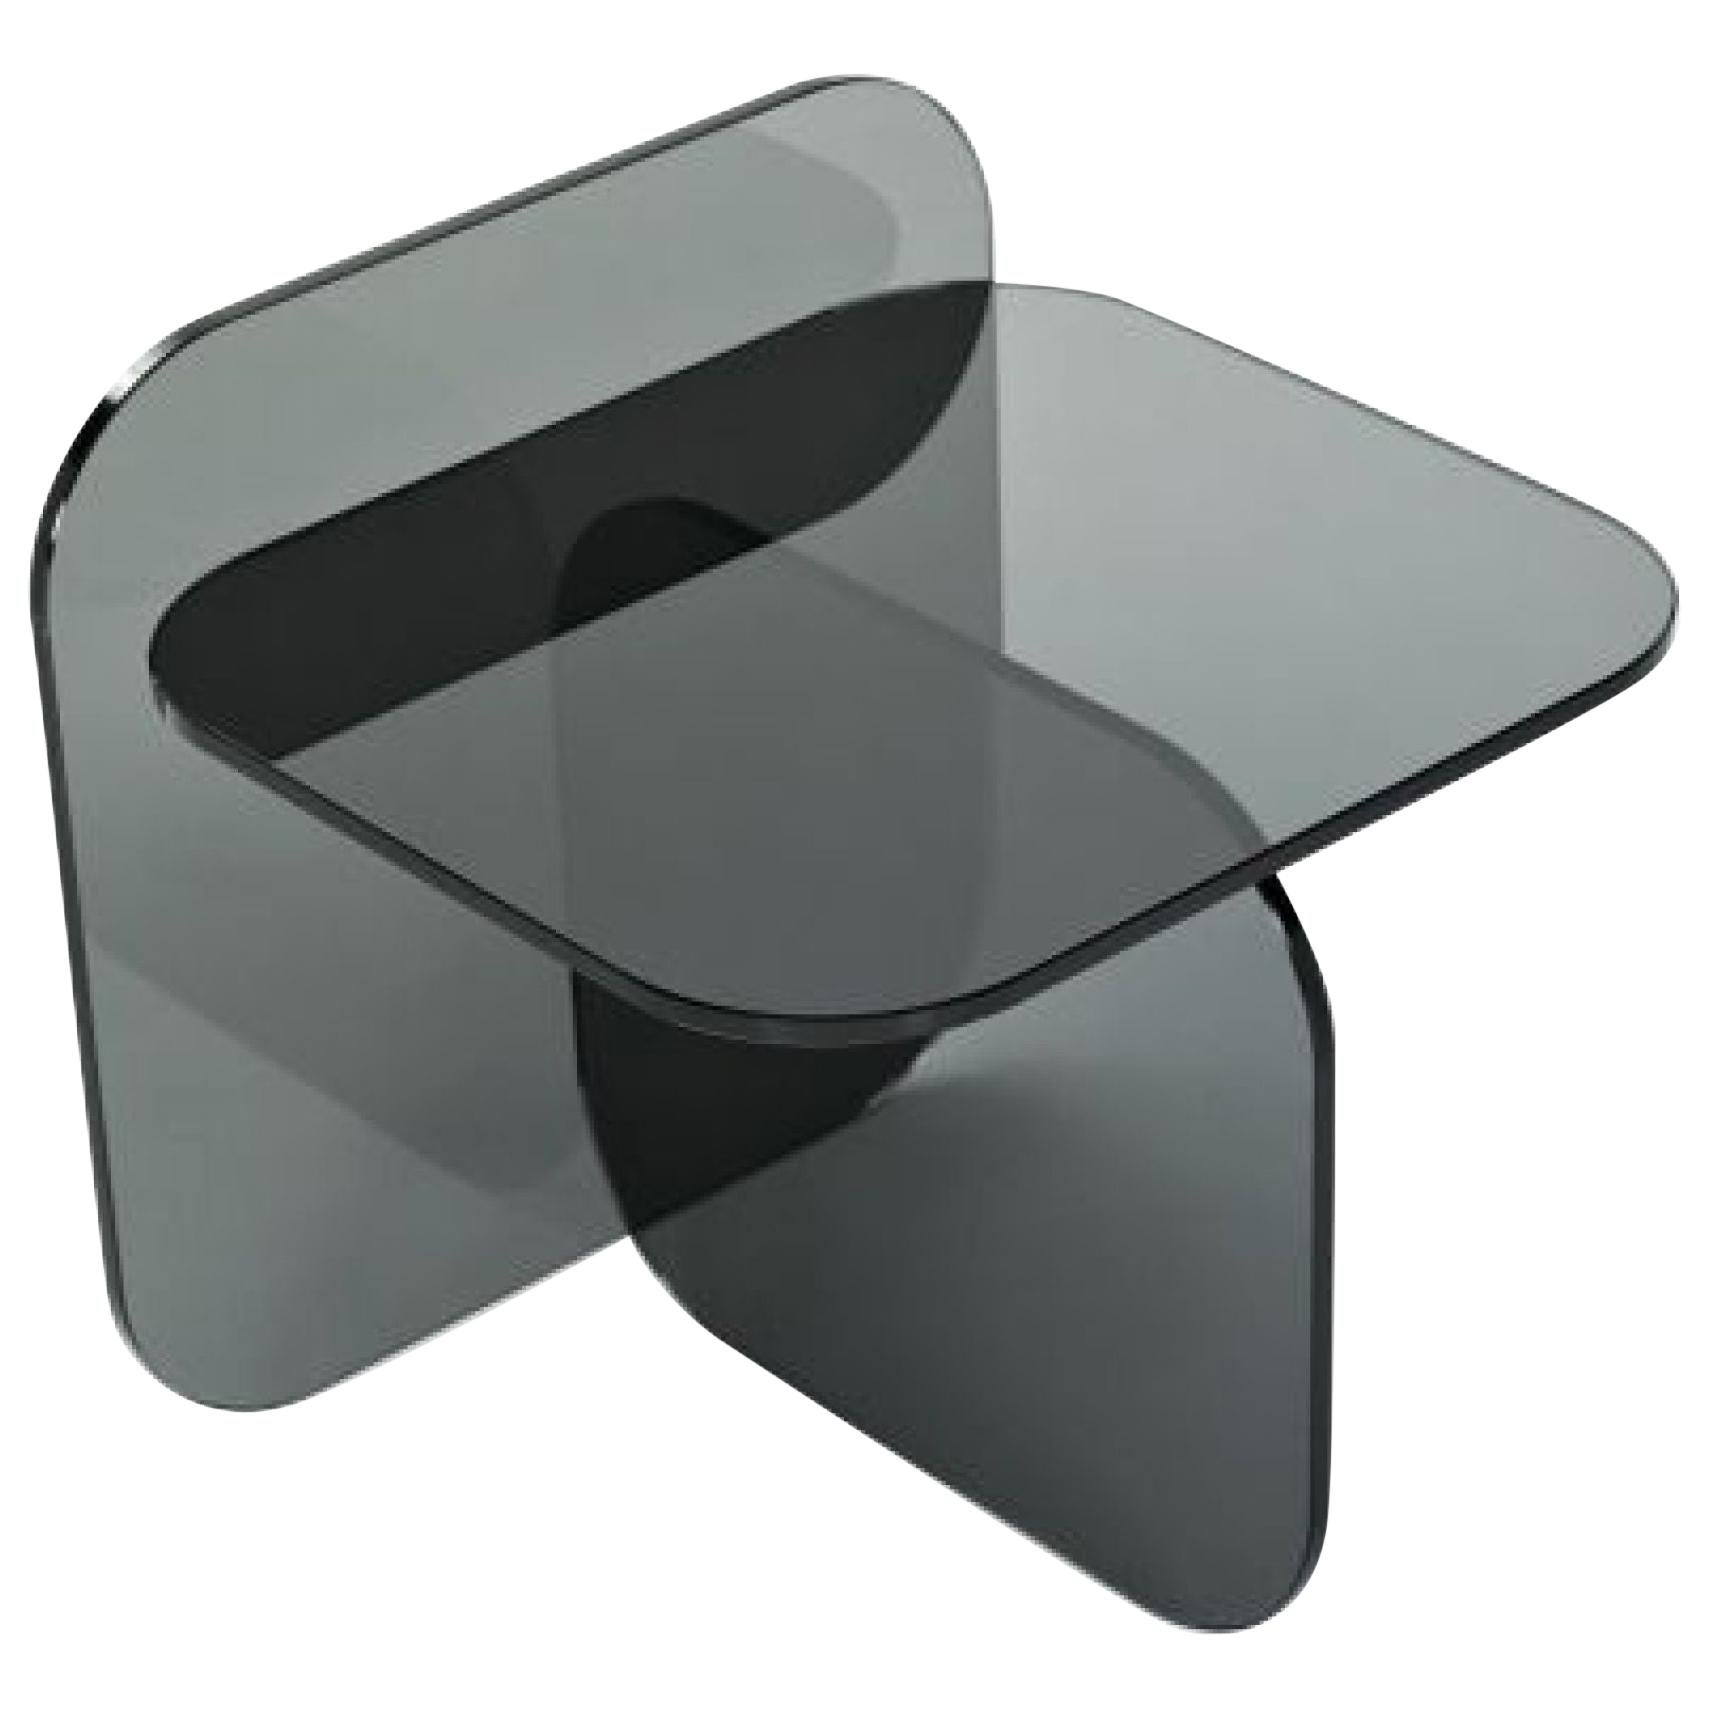 ClassiCon Sol Glass Side Table Designed by Ortega & Guijarro